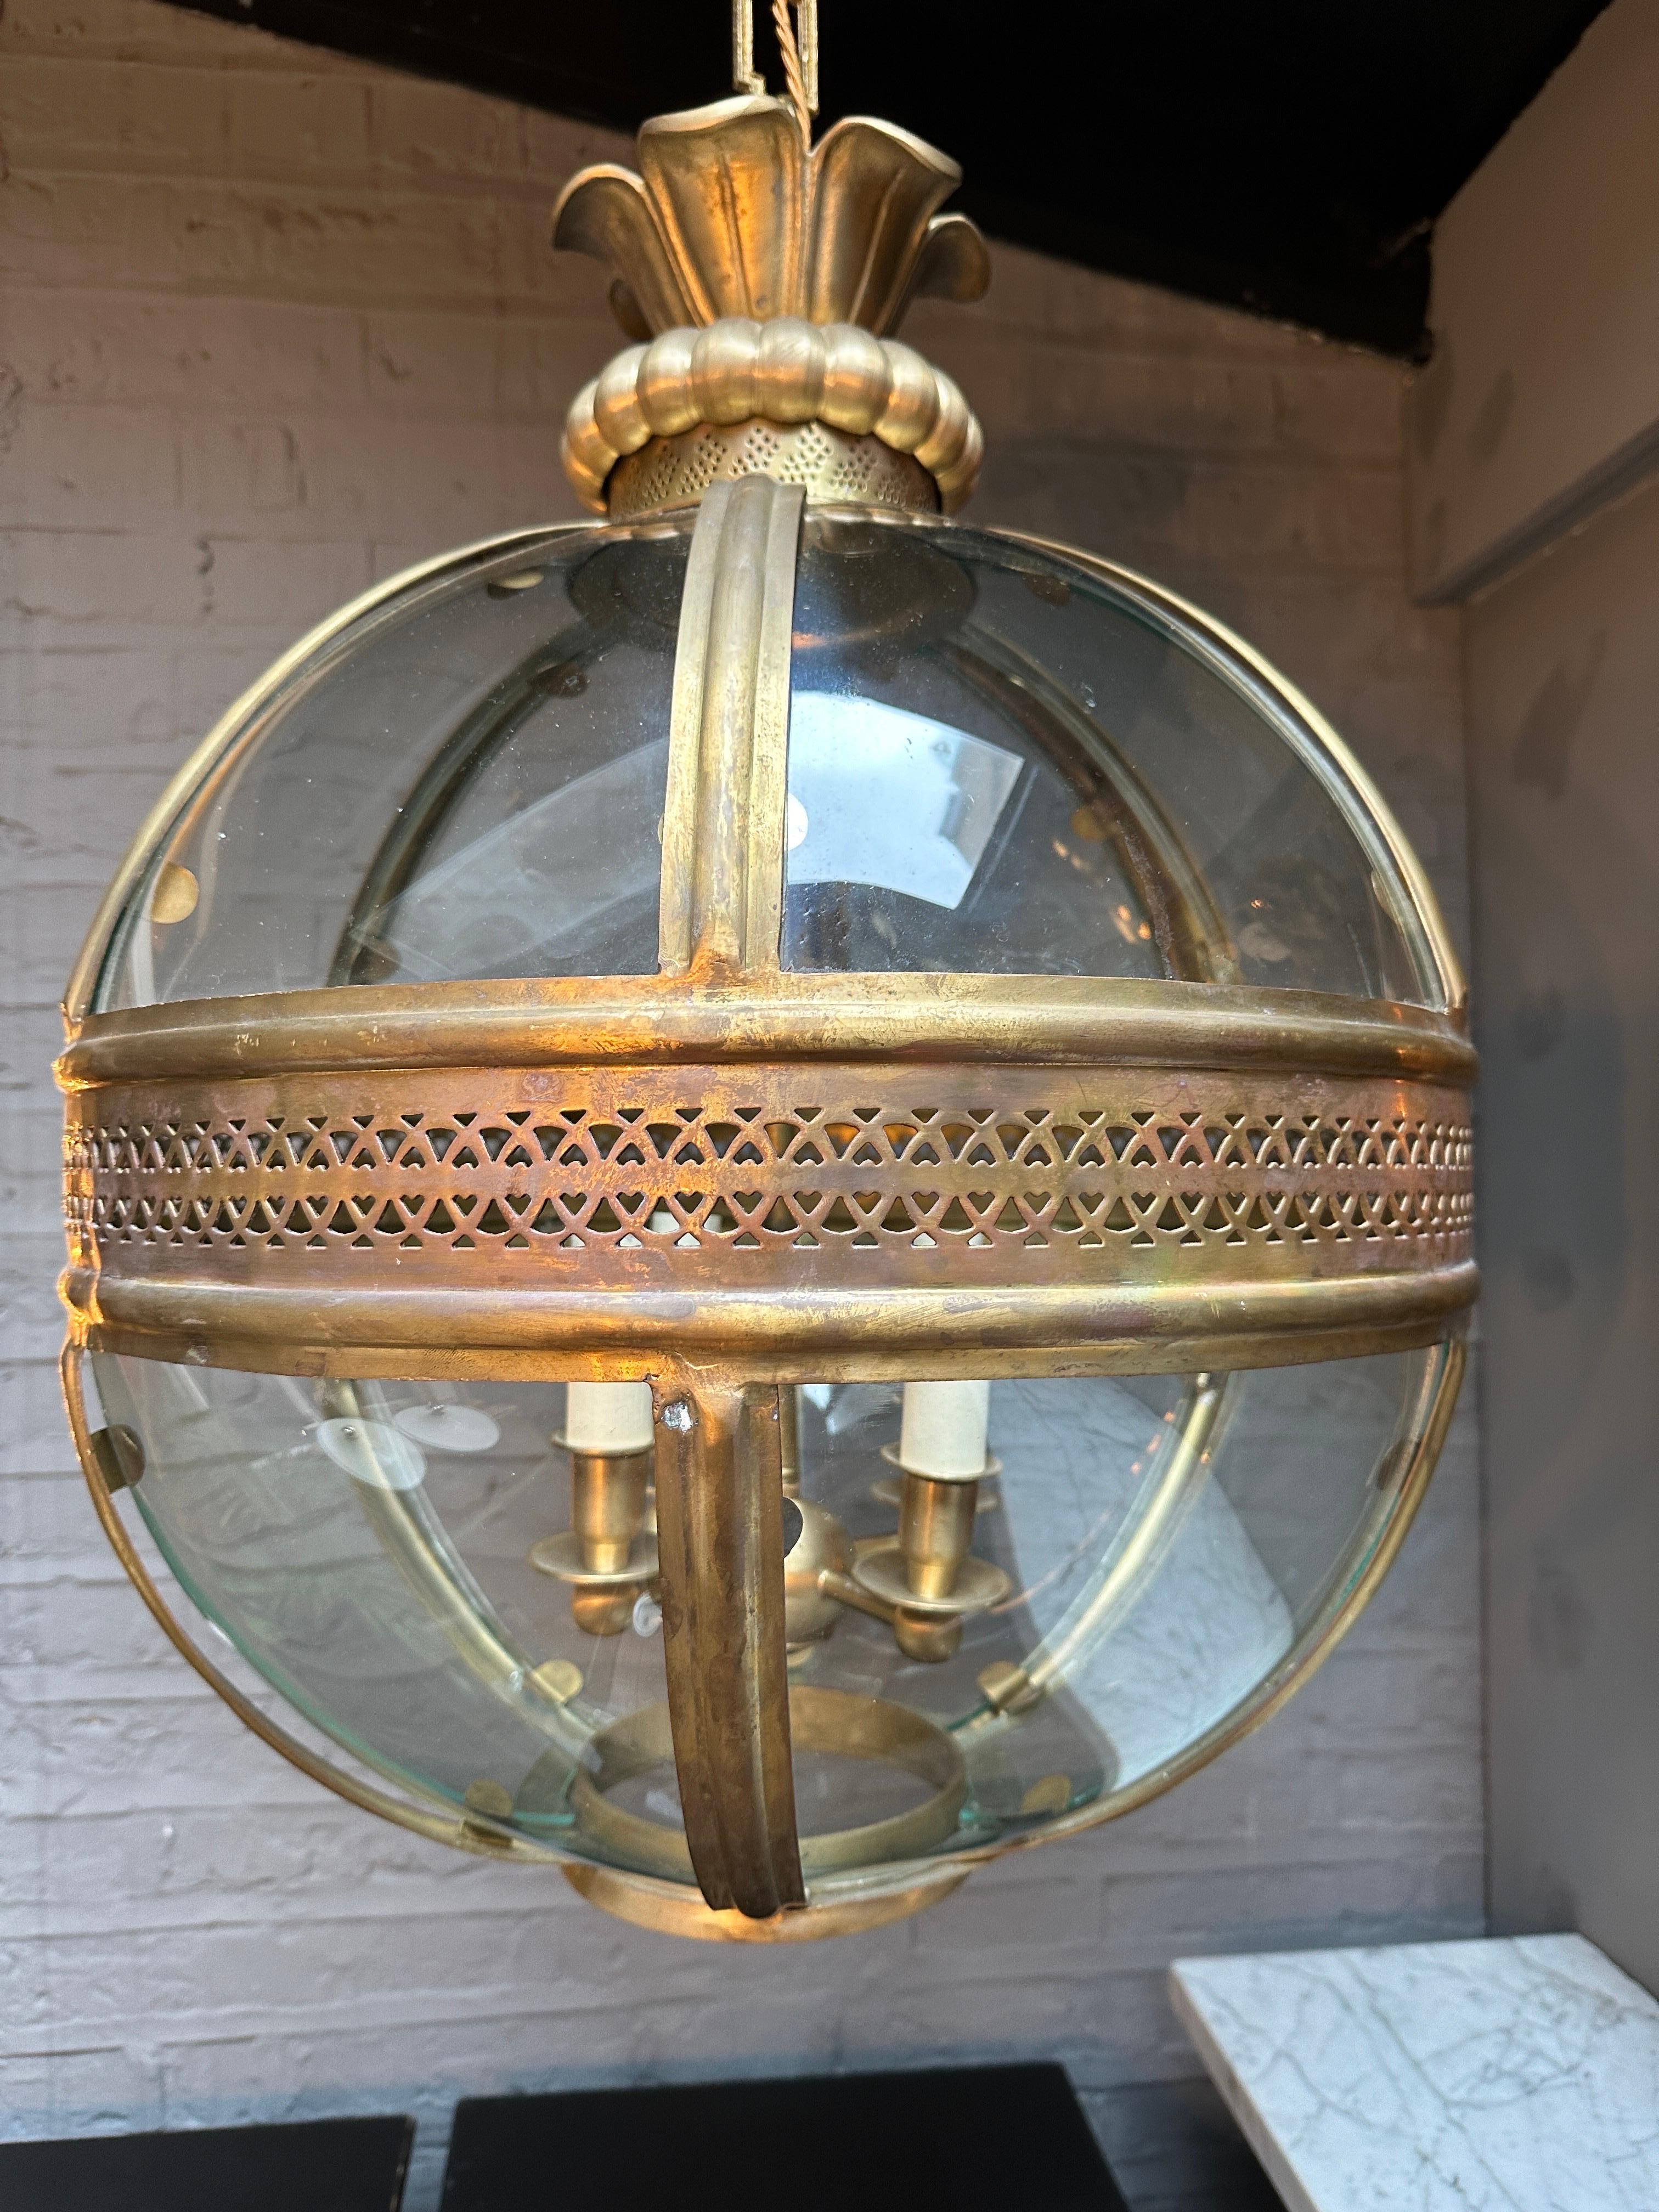 Une grande lanterne globe suspendue en laiton avec une finition antique vieillie. Les panneaux incurvés sont ornés de moulures en laiton. Le centre est orné d'un motif géométrique percé, avec une branche à quatre bras à l'intérieur. Le baldaquin ou